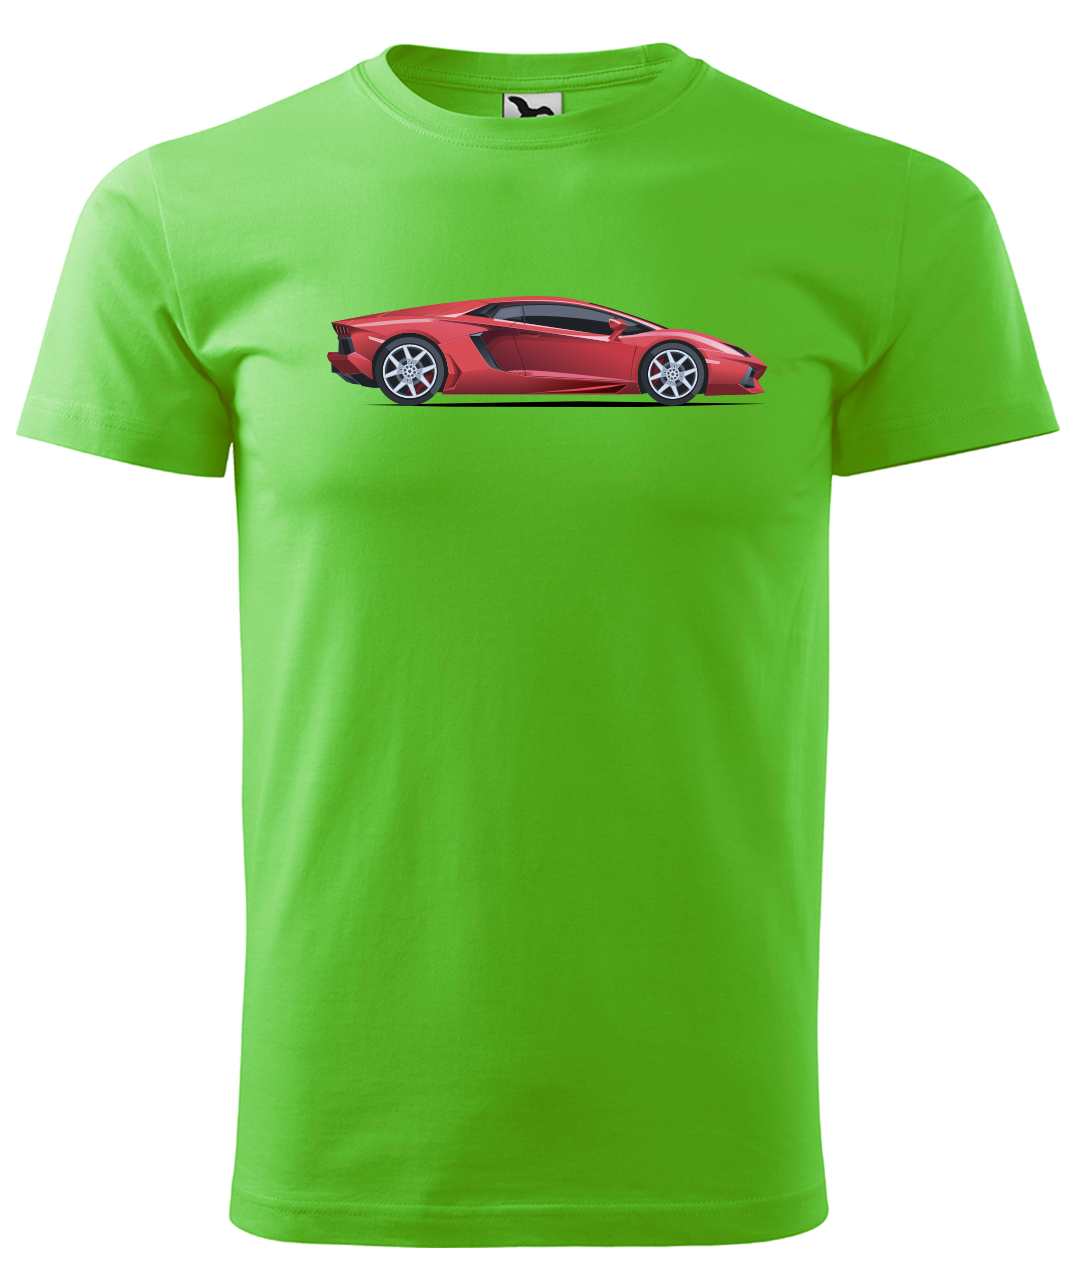 Dětské tričko s autem - Červený sporťák Velikost: 6 let / 122 cm, Barva: Apple Green (92)